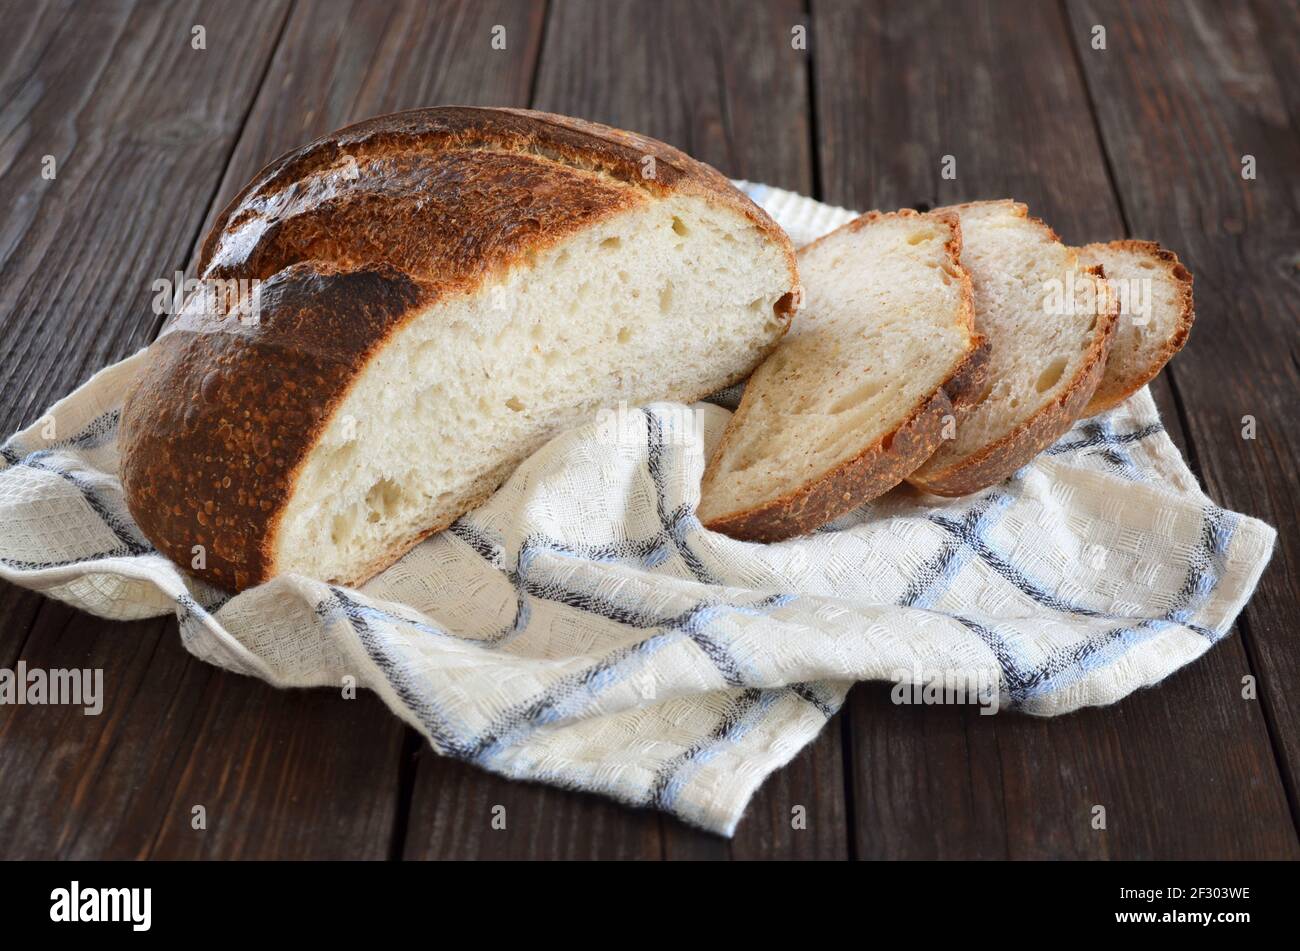 Hausgemachtes Brot in Scheiben mit einer knusprigen Kruste in einer Küche Nahaufnahme des Handtuchs Stockfoto